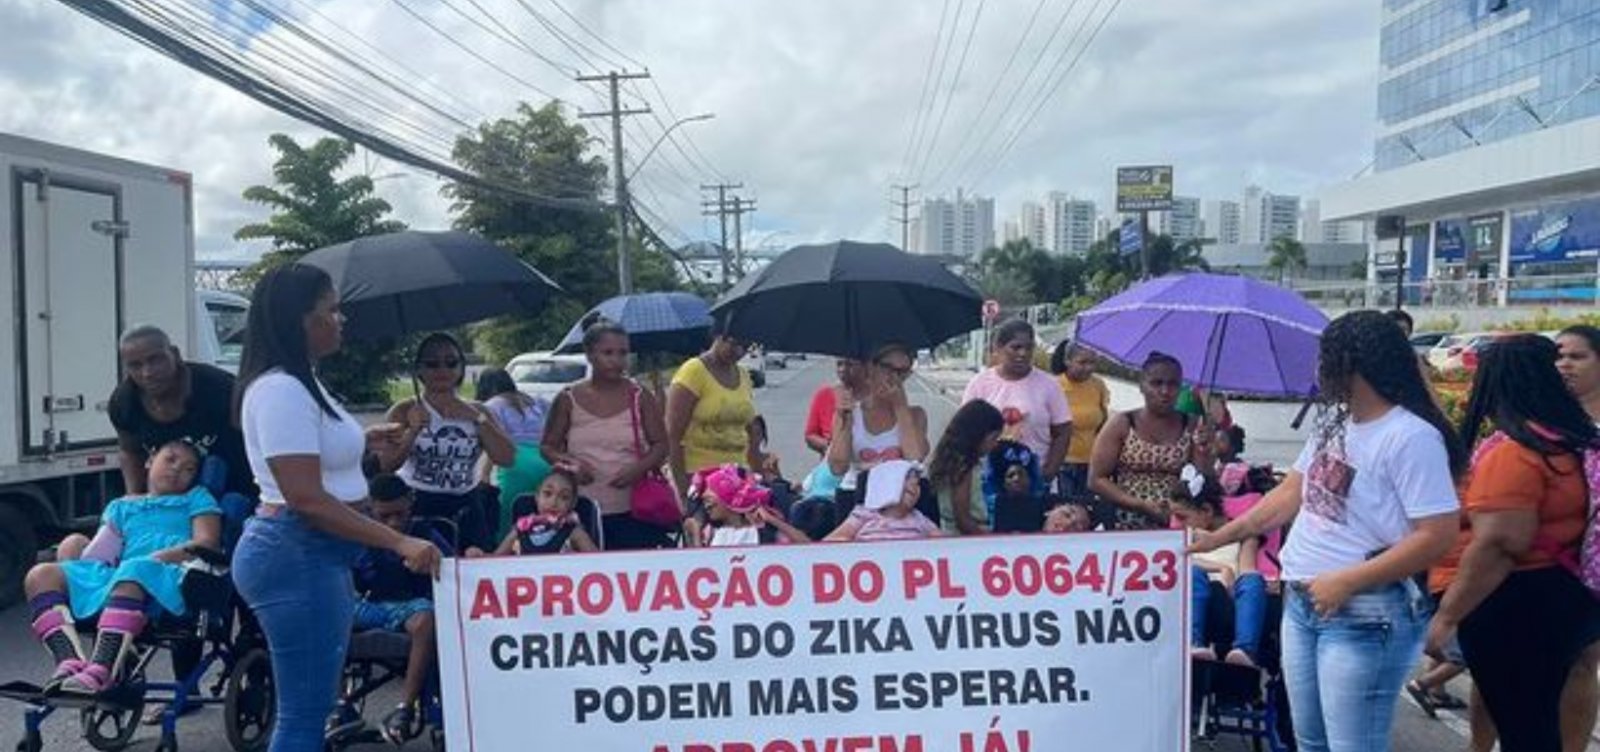 Mães de crianças com microcefalia relatam desafios e esperanças após manifestação em Salvador